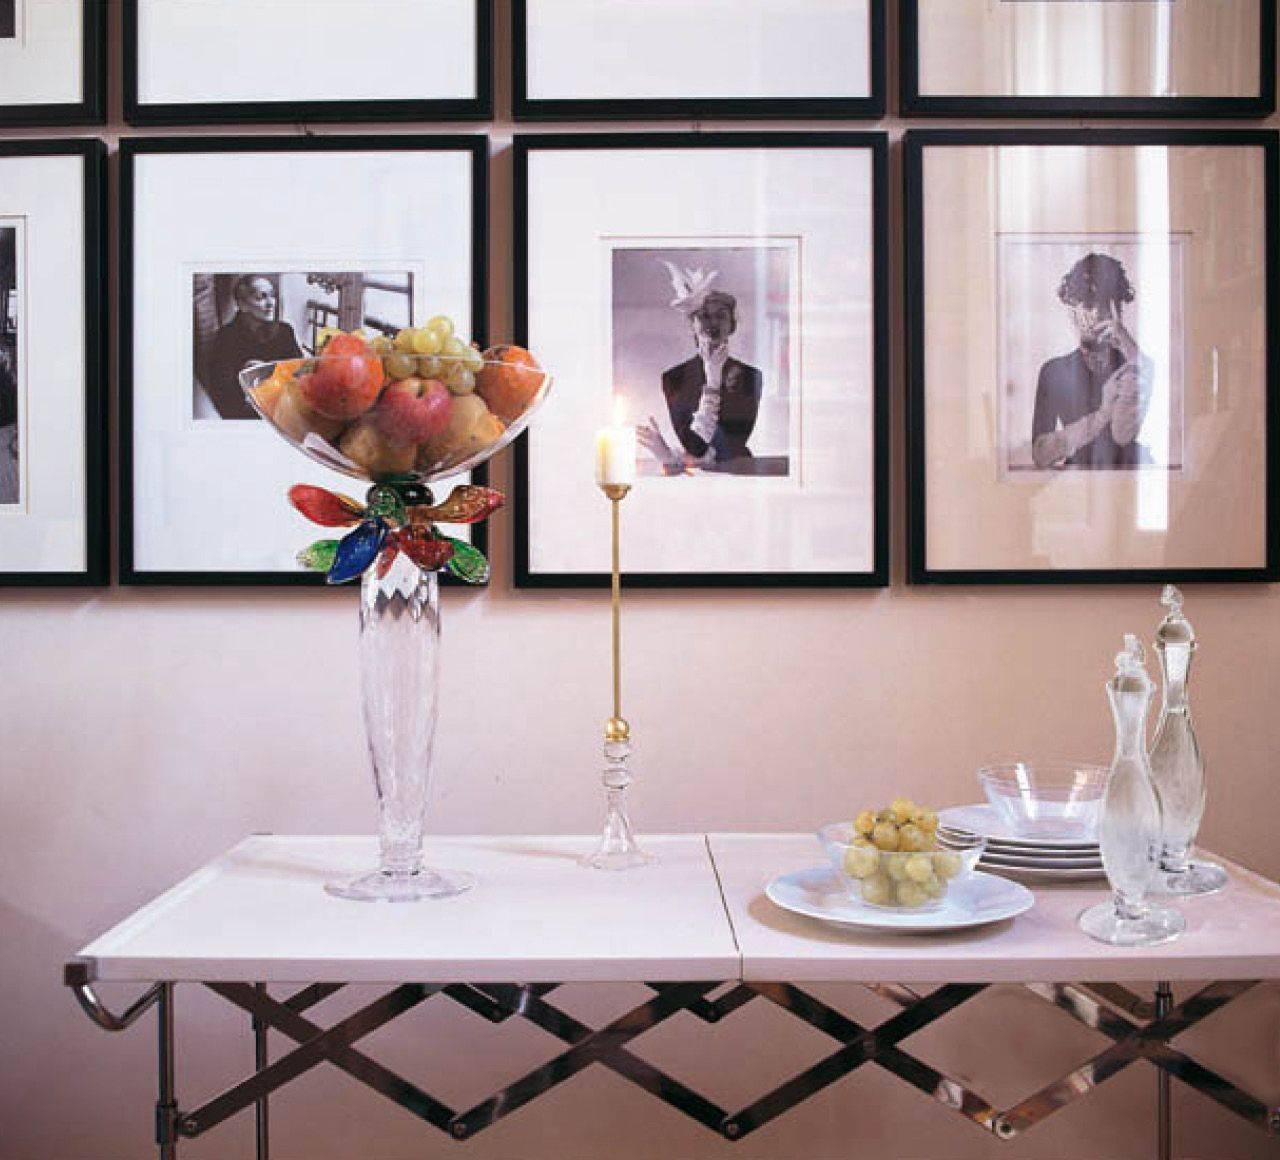 Un centre de table sophistiqué avec des détails de feuilles multicolores. Une joie sensationnelle pour tout spectateur.

Borek Sipek (1949-2016). Après avoir étudié l'architecture d'intérieur à l'école des arts et métiers de Prague (1964-1968), il